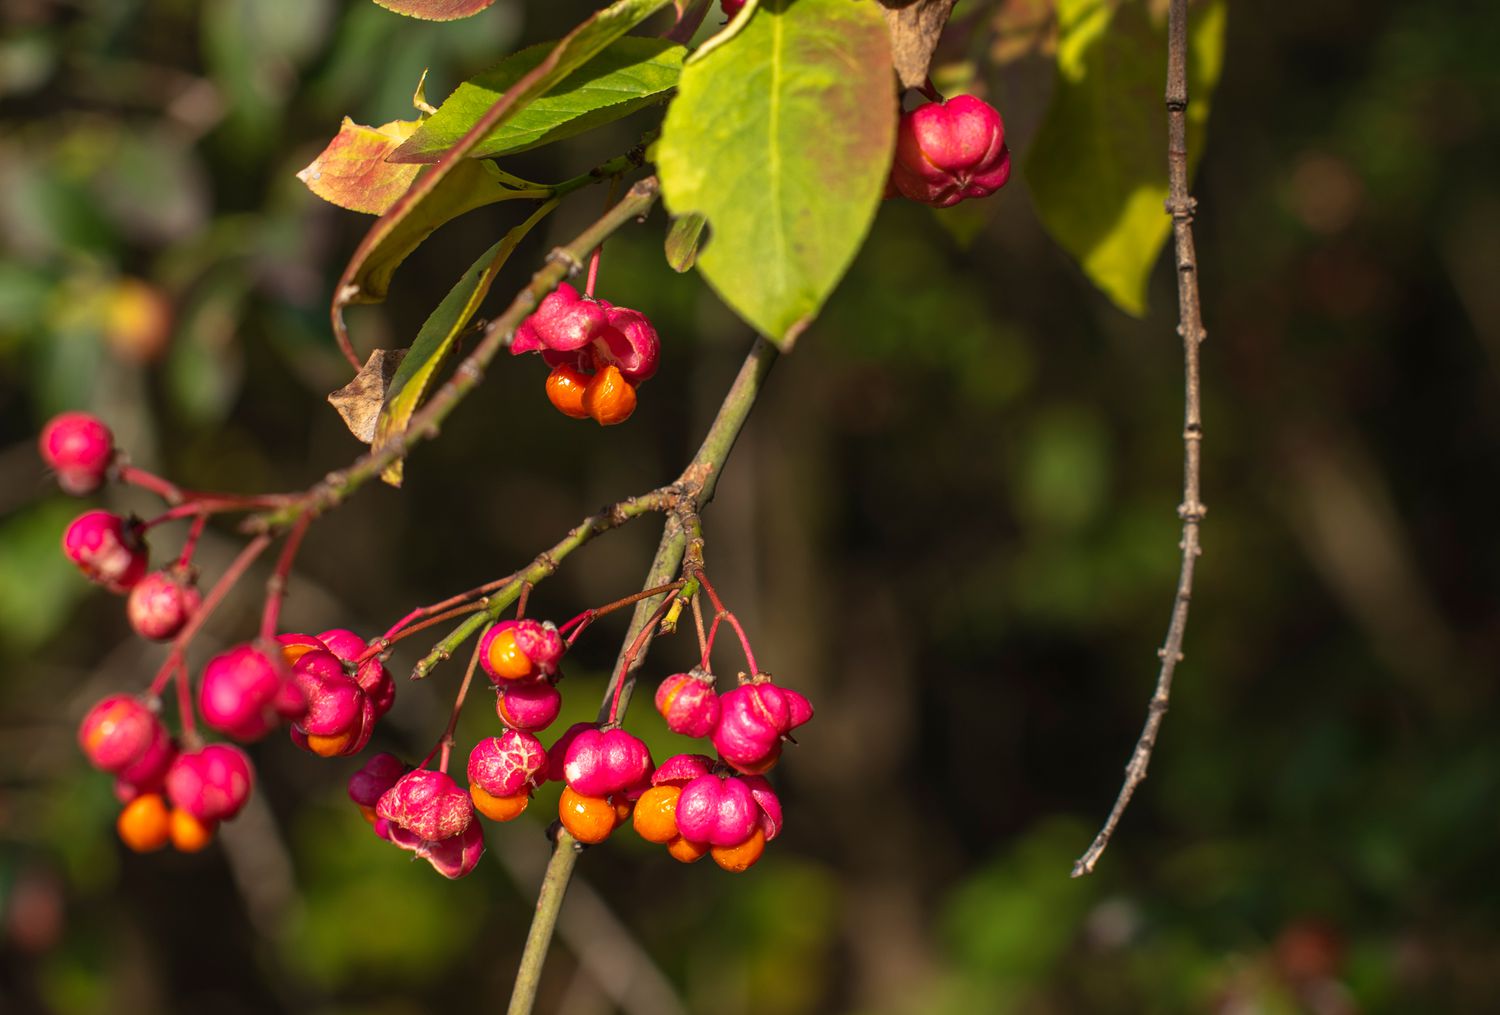 Europäischer Spindelbaumzweig mit fuchsienfarbenen Beeren in Nahaufnahme